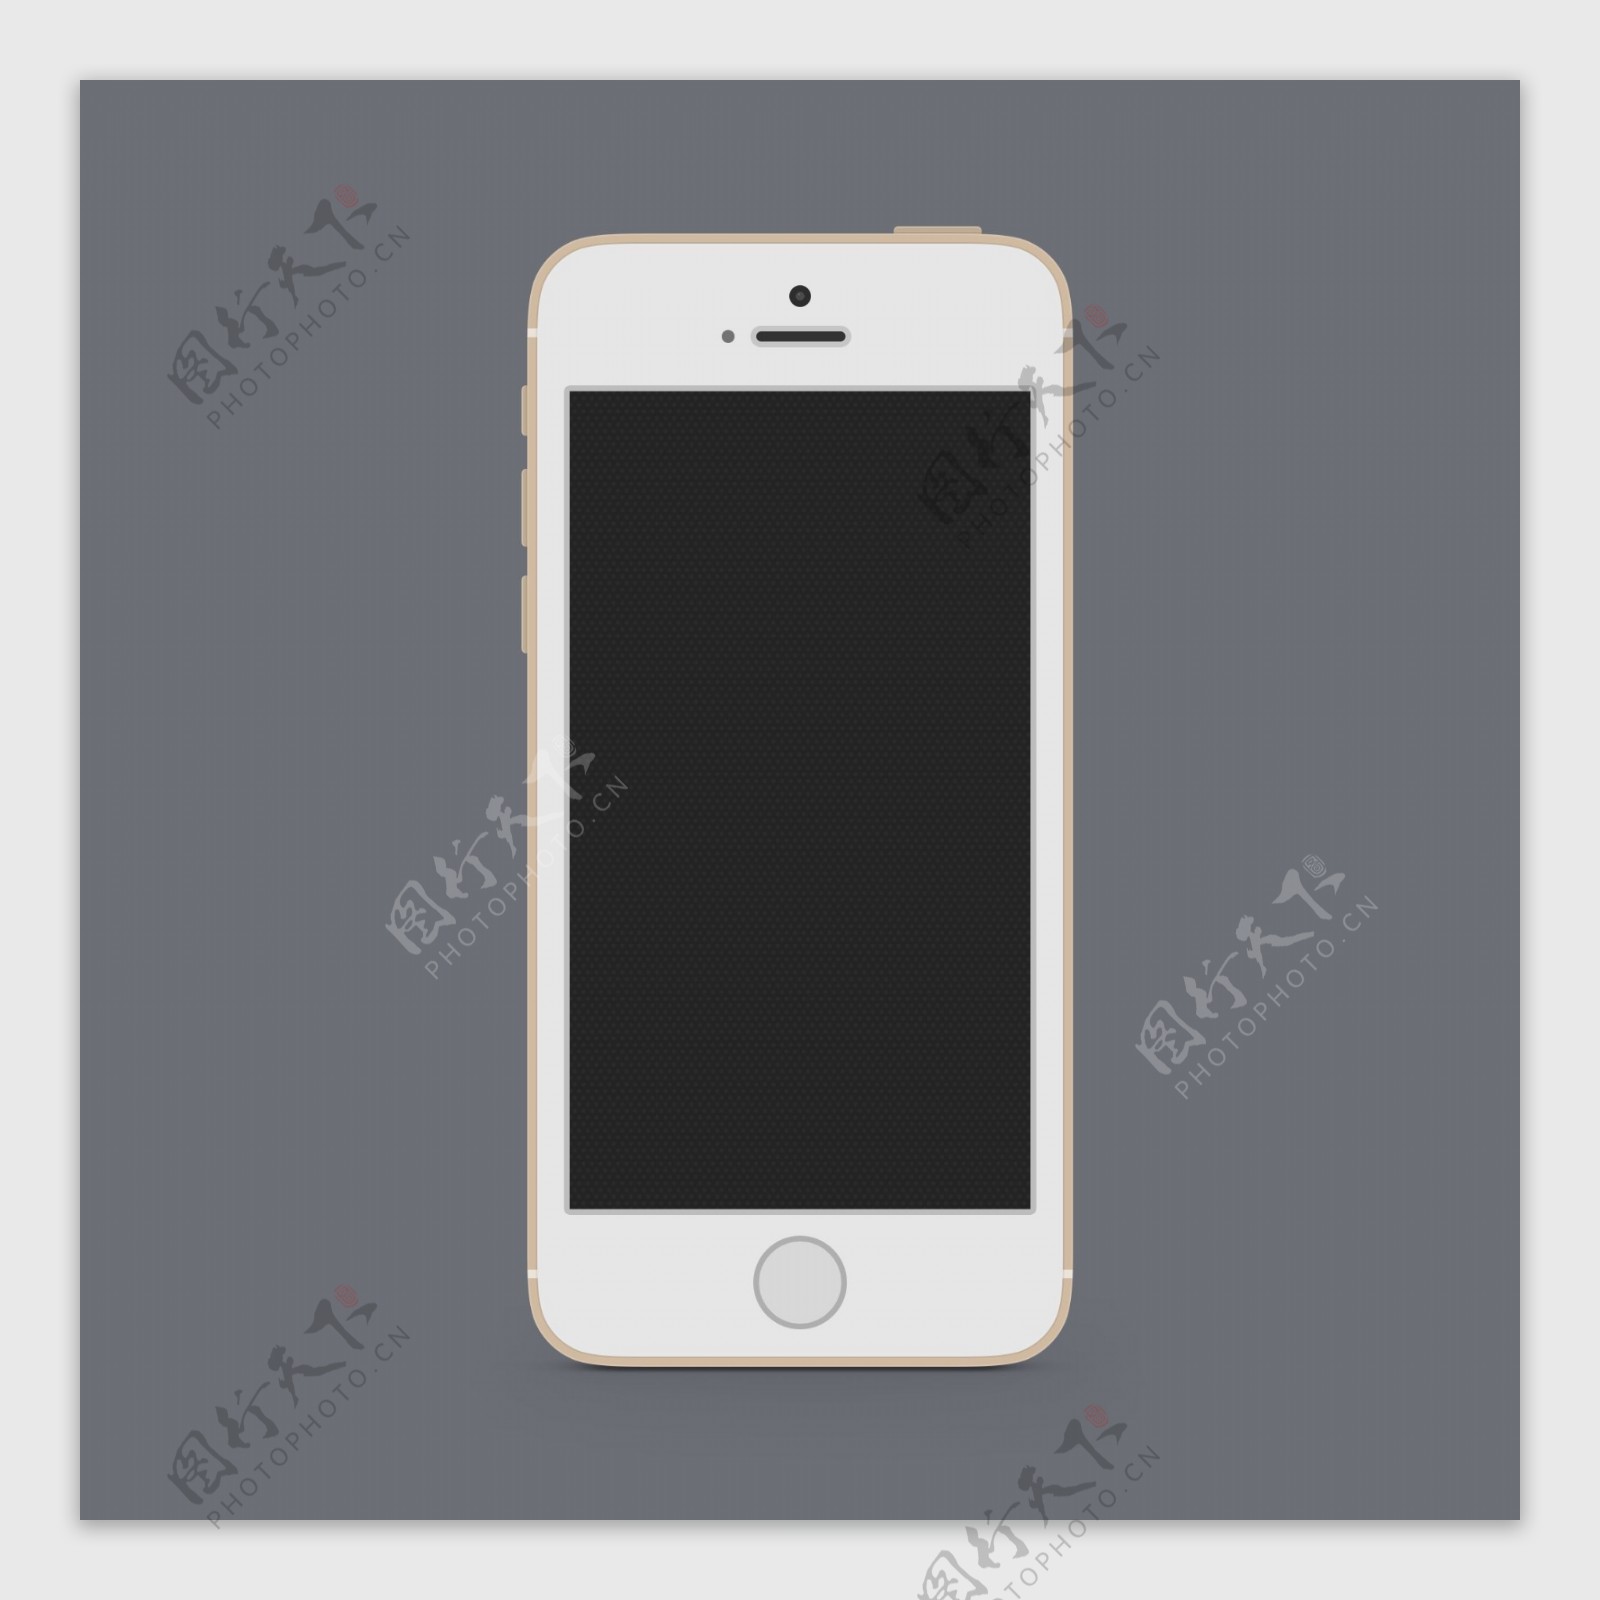 平坦的iPhone5S模型模板